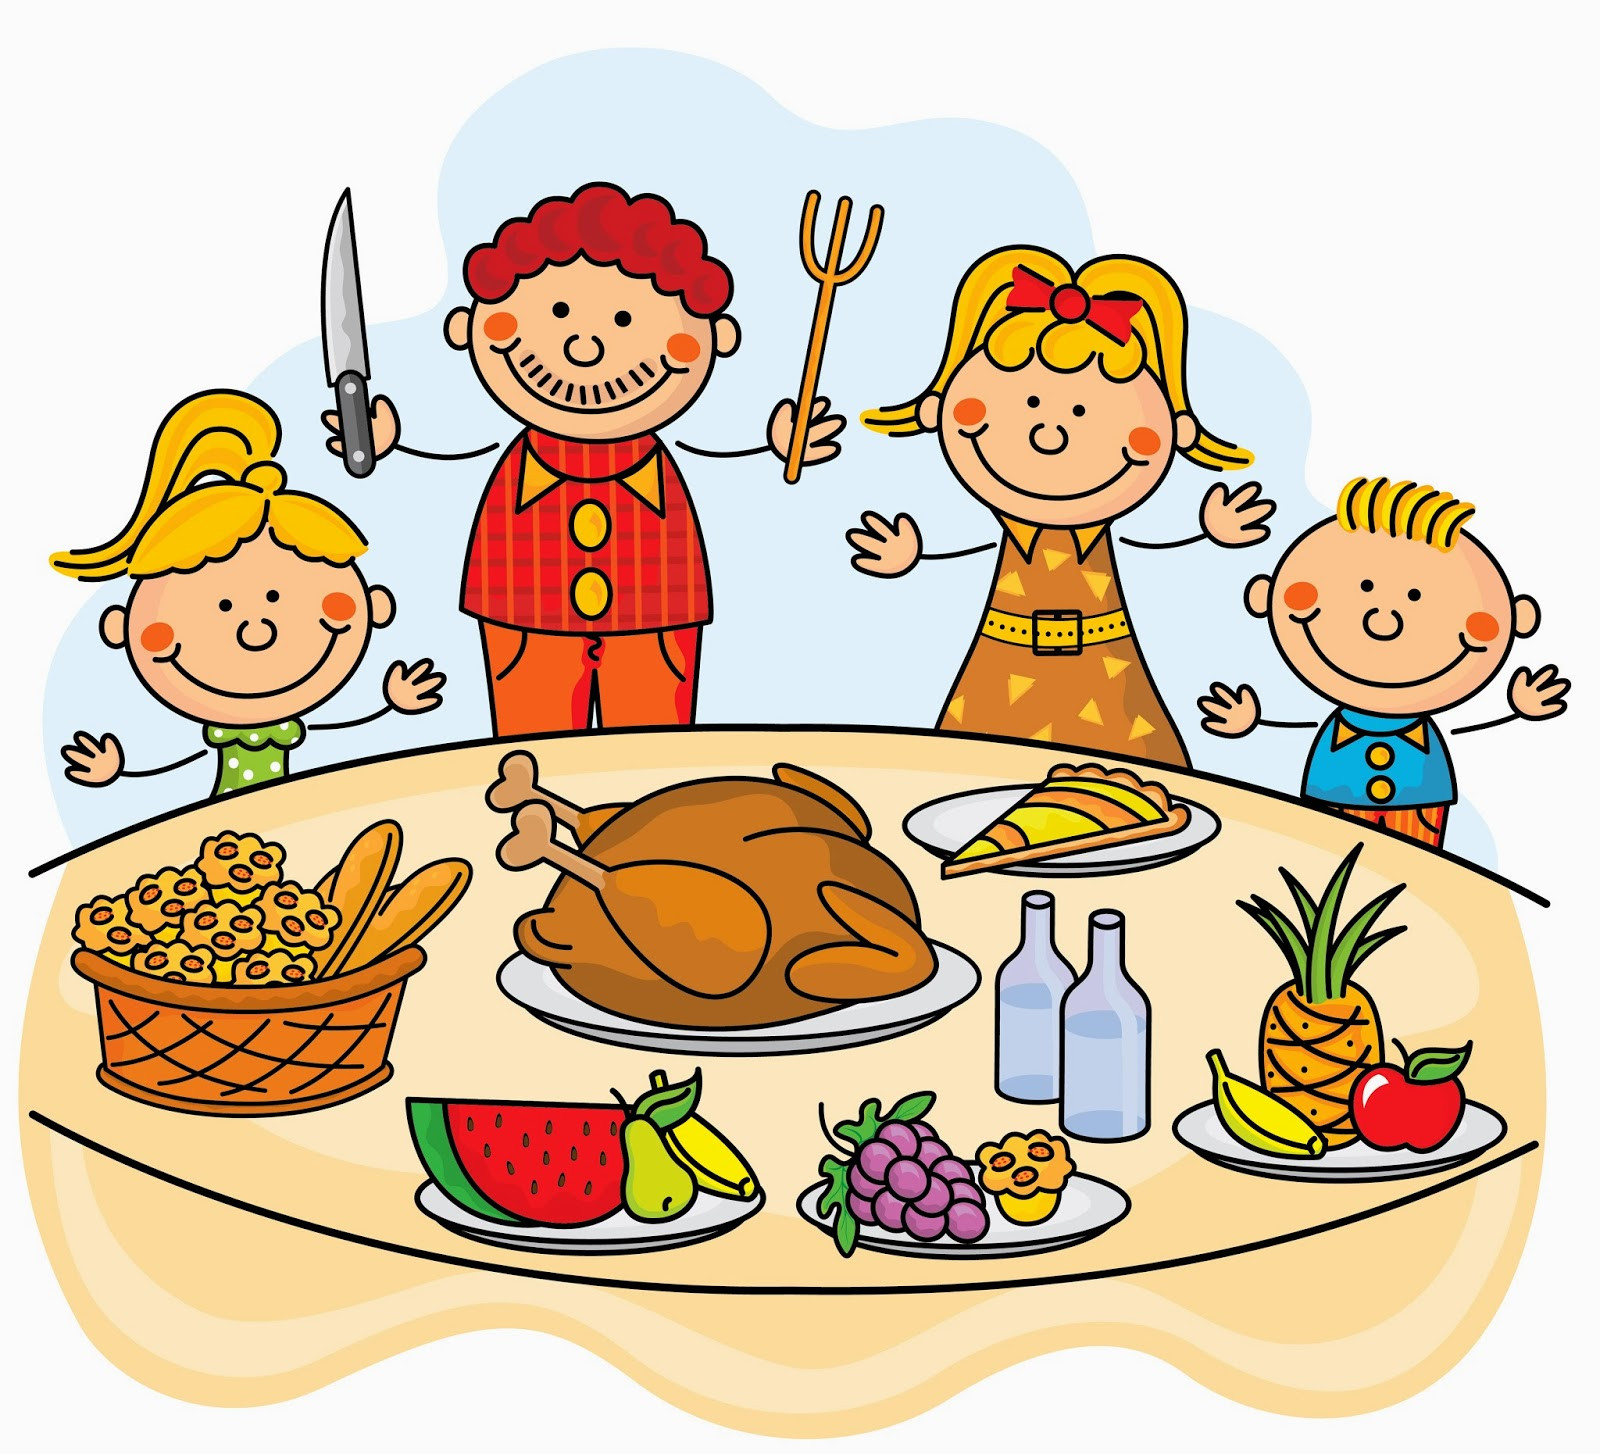 Thanksgiving Dinner Clipart
 Thanksgiving Family Dinner Clipart – 101 Clip Art